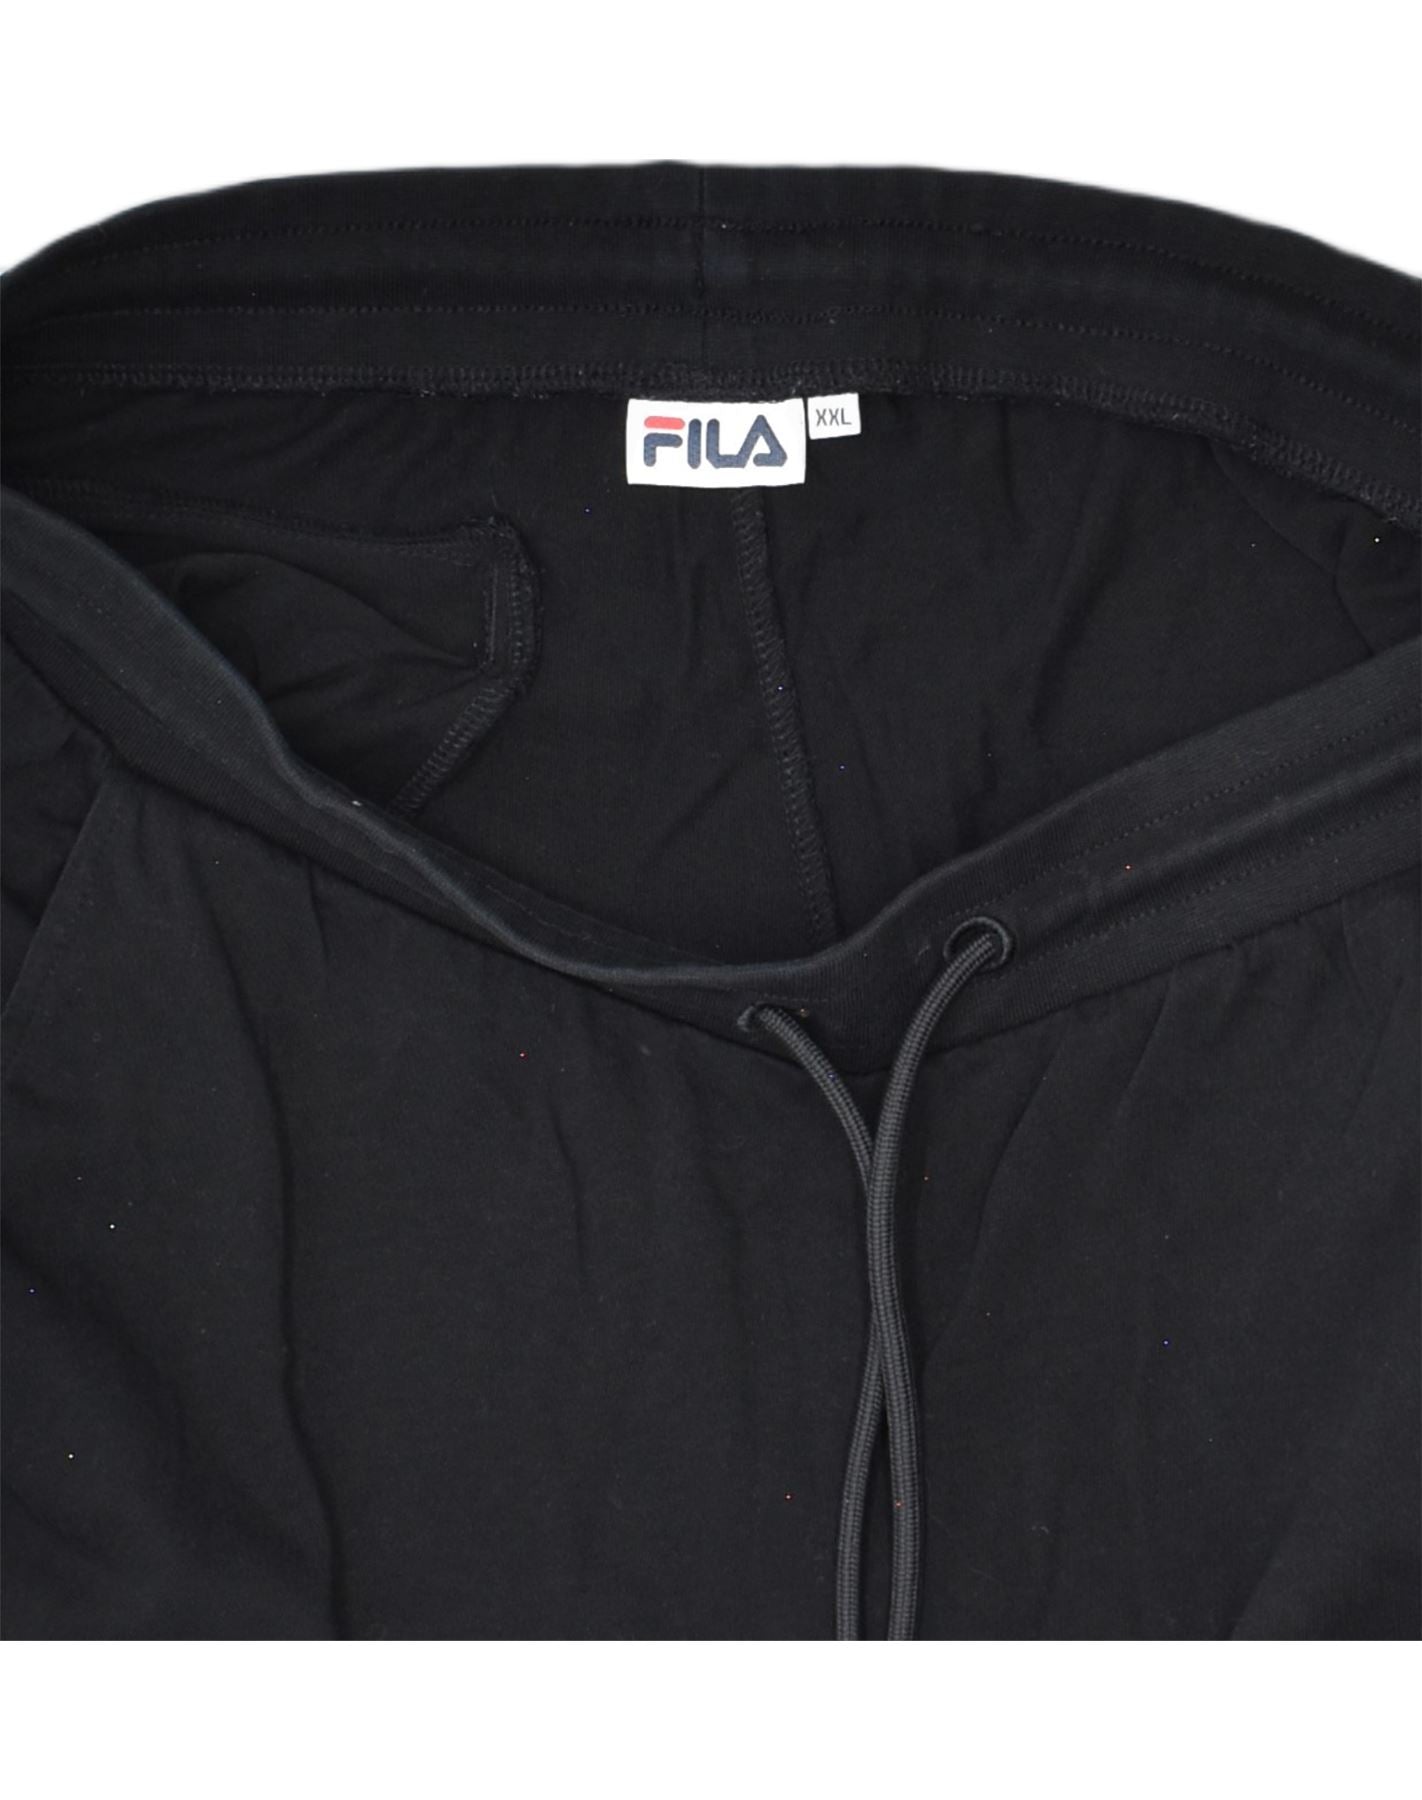 Fila Classic Fleece Joggers Black 2XL